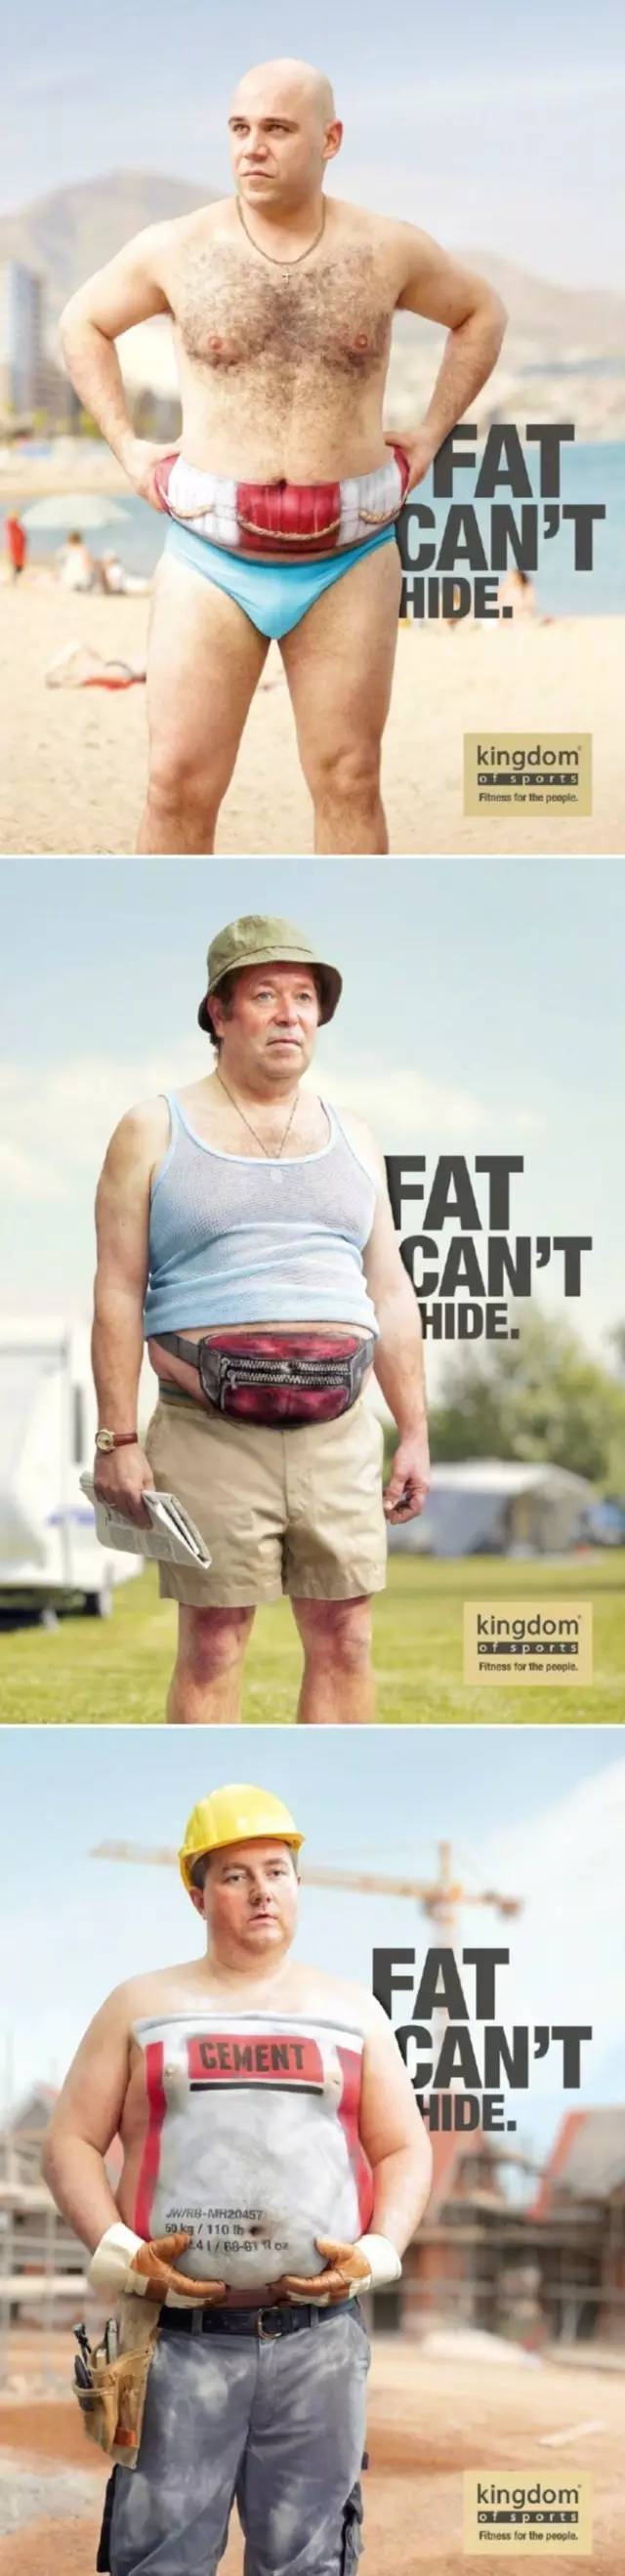 超牛逼的健身创意海报!看过的胖子都瘦了